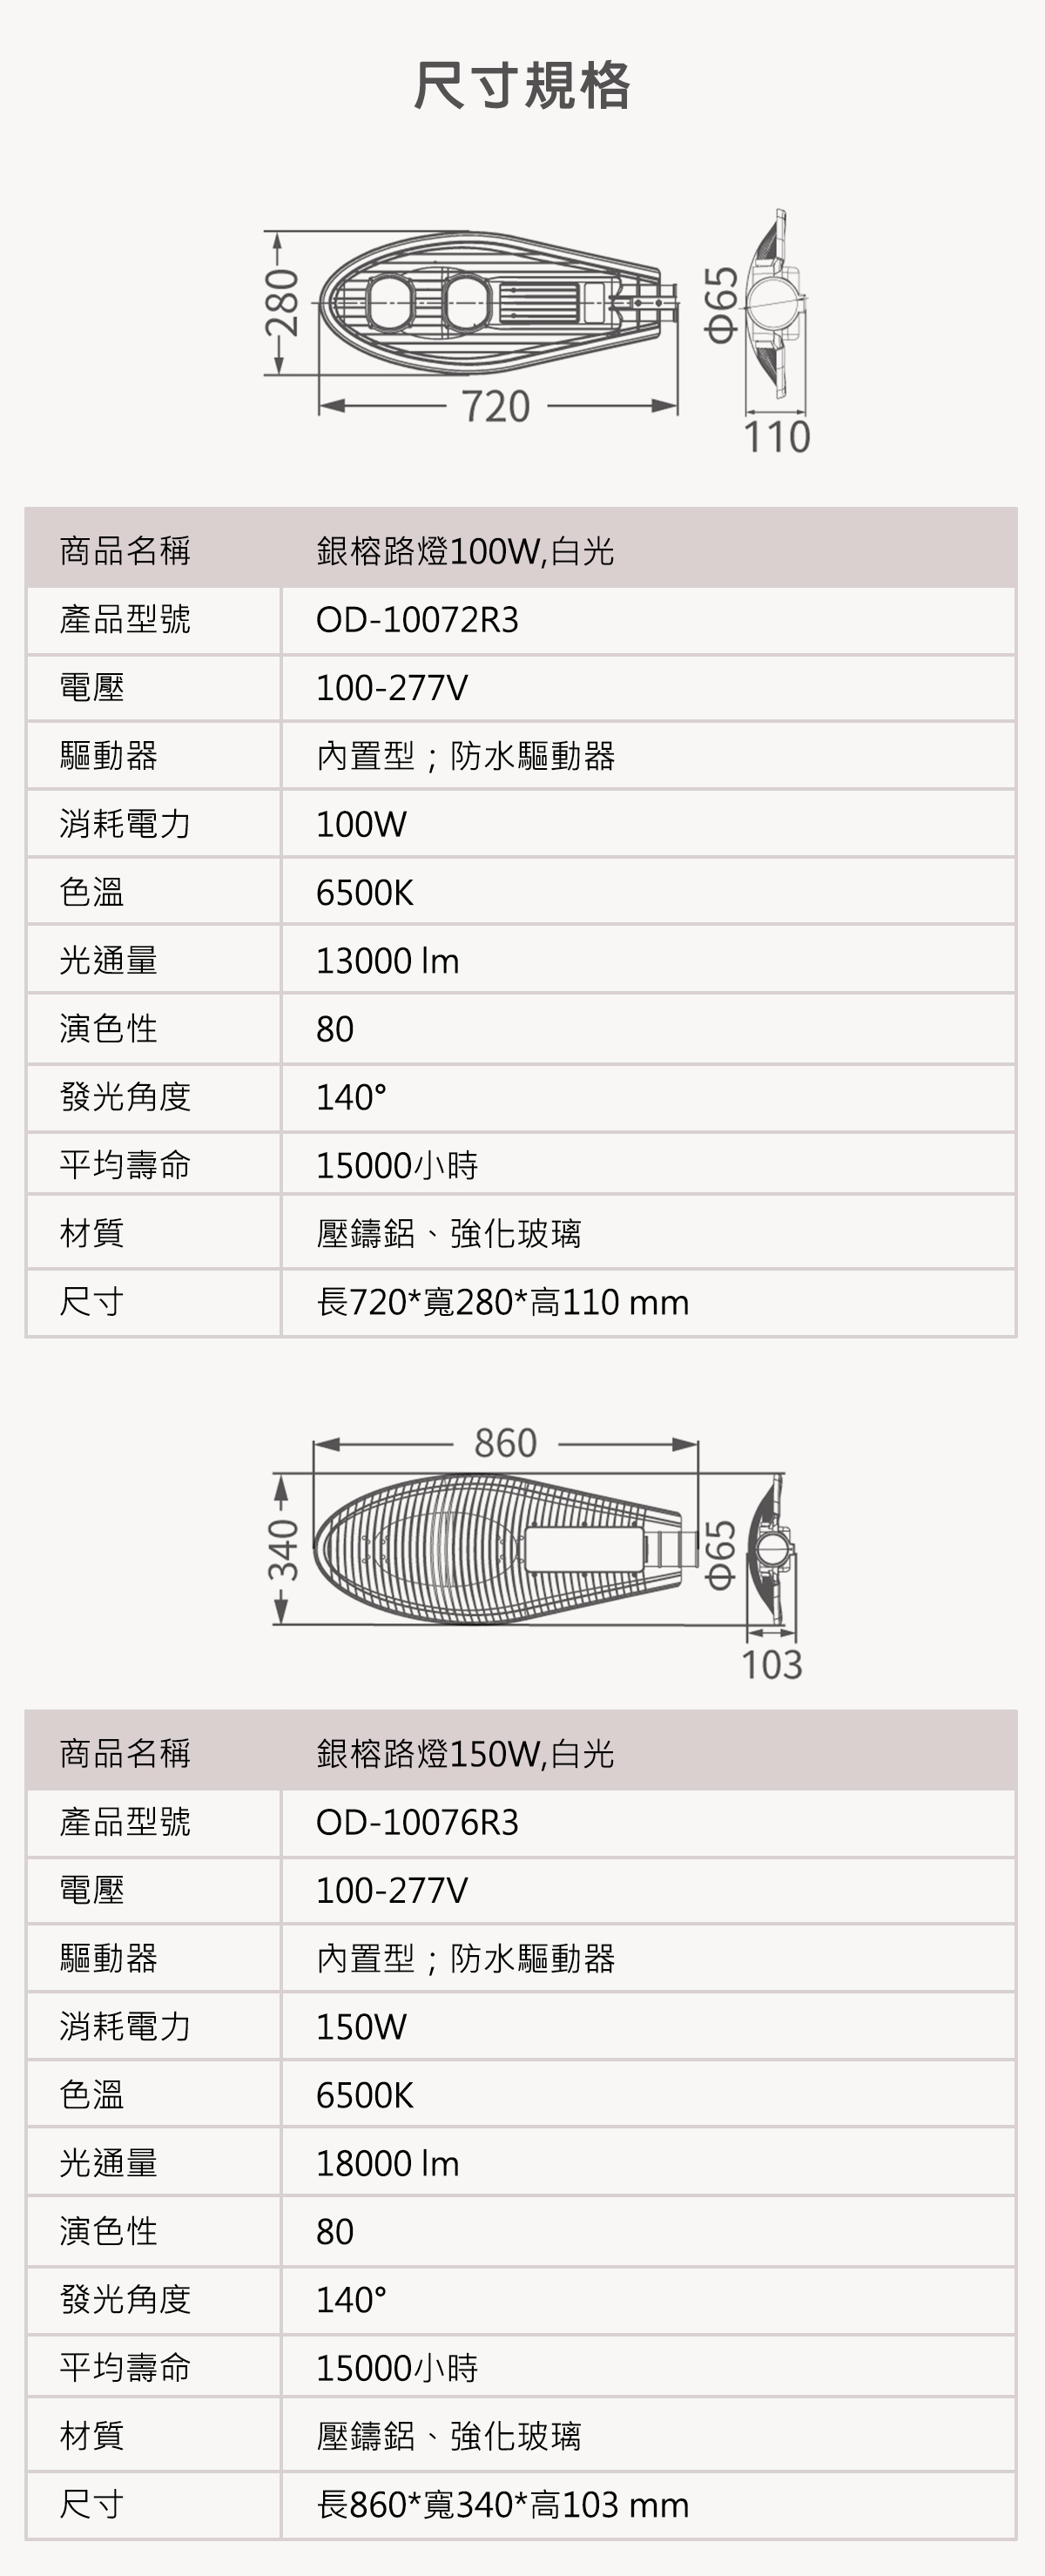 【舞光】LED 100W 150W 銀榕路燈 白光 全電壓 IP66防水防塵 適用 4米 5米